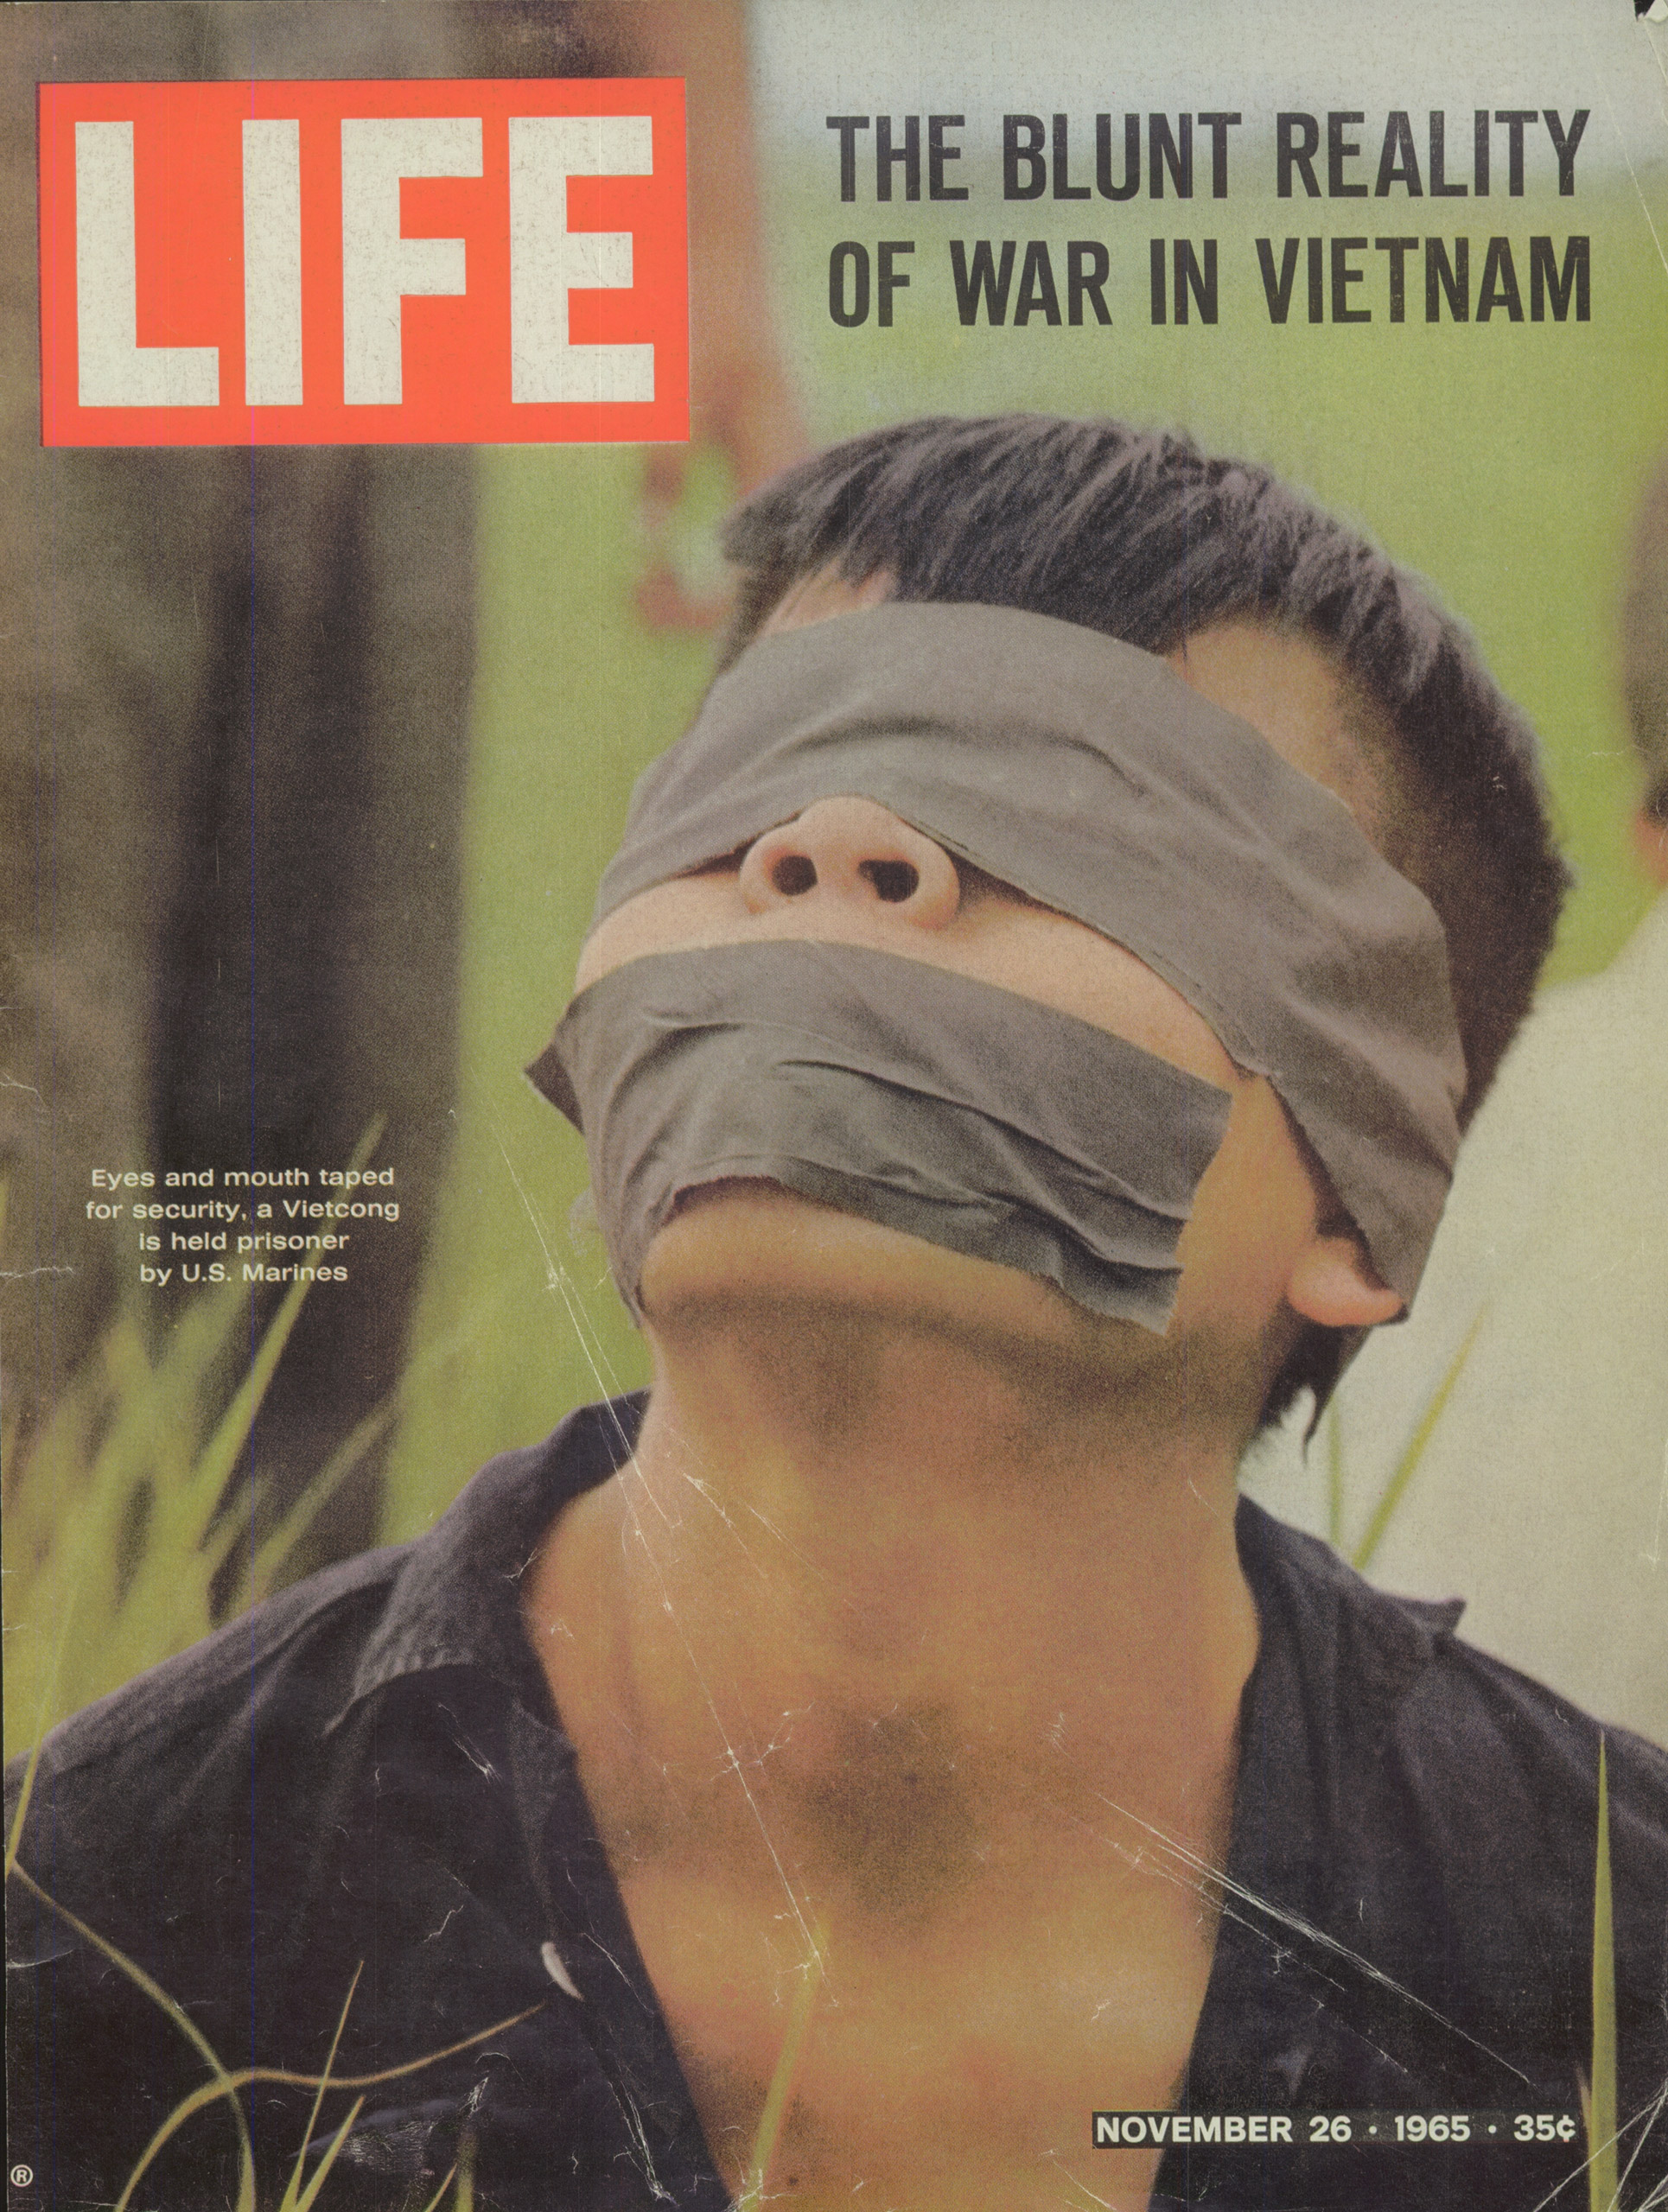 Nov. 26, 1965 cover of LIFE magazine.